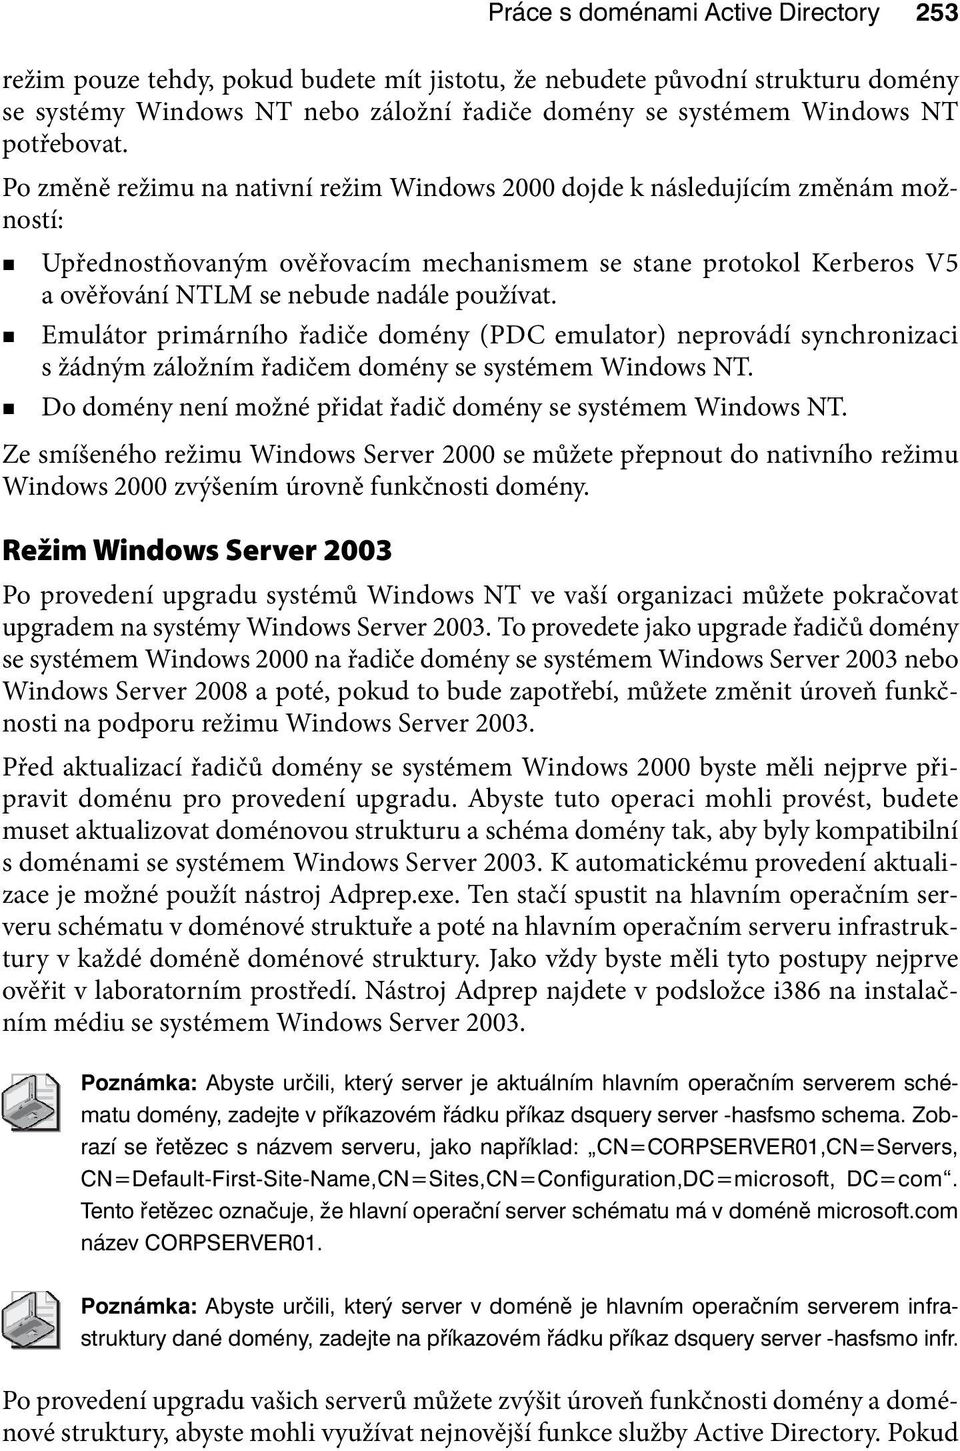 Po změně režimu na nativní režim Windows 2000 dojde k následujícím změnám možností: Upřednostňovaným ověřovacím mechanismem se stane protokol Kerberos V5 a ověřování NTLM se nebude nadále používat.